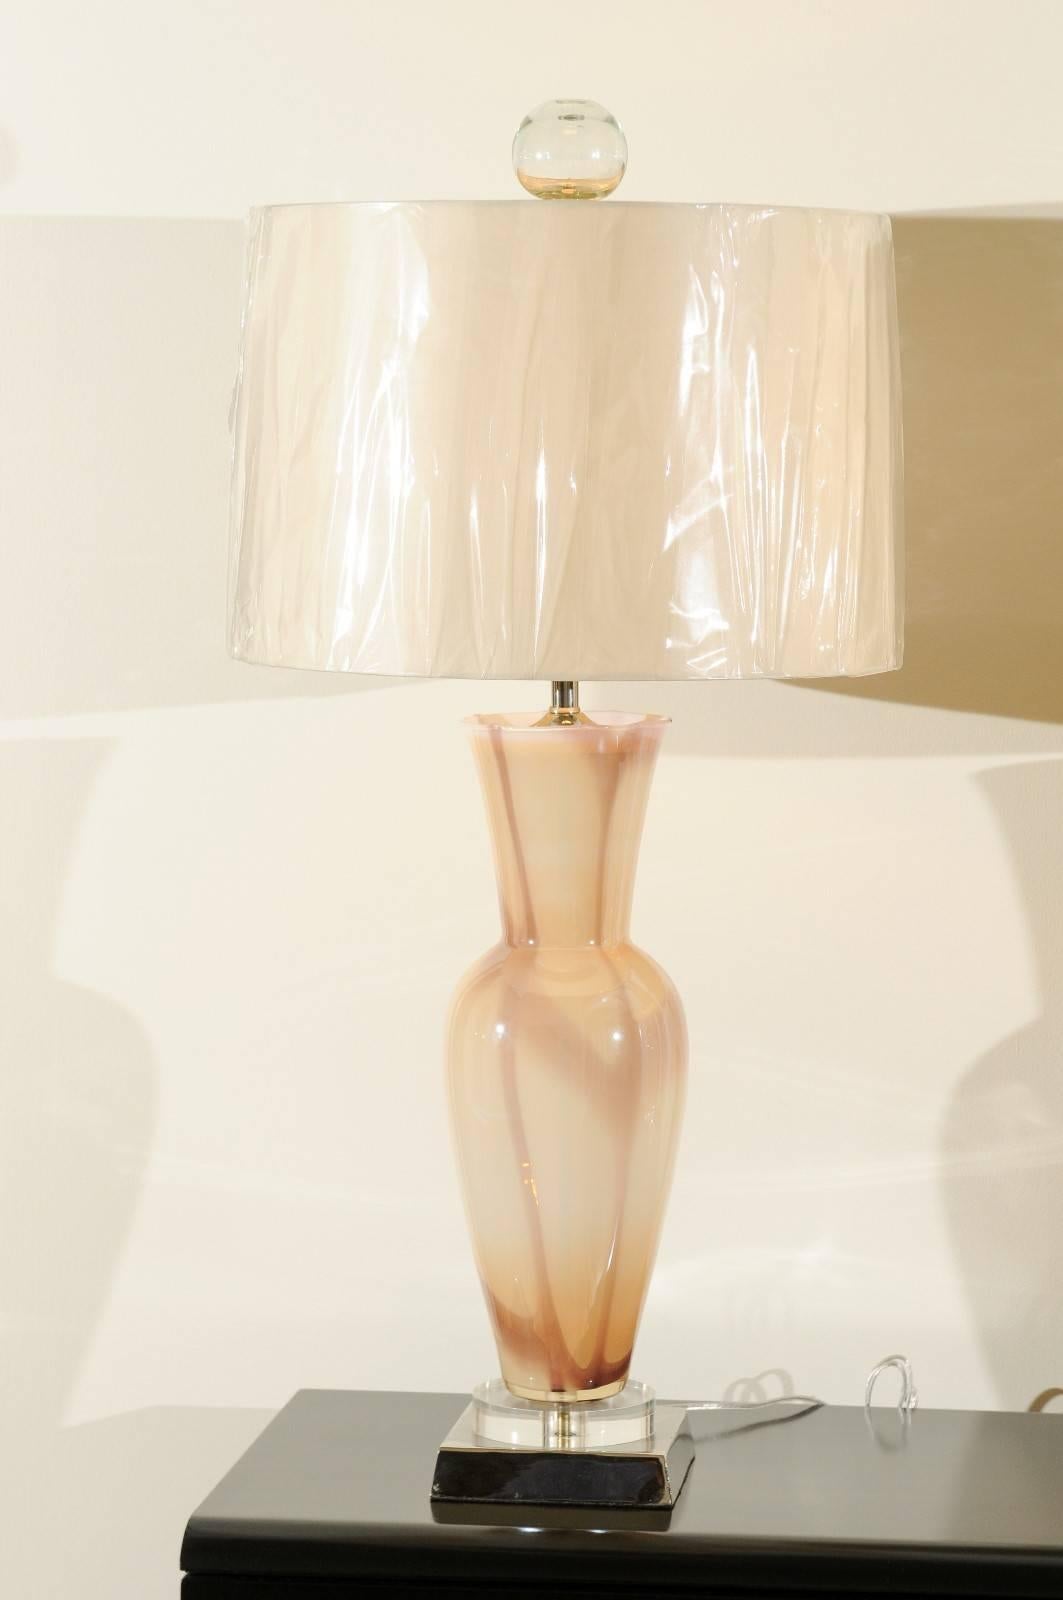 Diese prächtigen Lampen wurden professionell restauriert und werden wie fotografiert und beschrieben versandt, komplett mit neuen Schirmen, Harfen und Endstücken.

Ein atemberaubendes Paar mundgeblasener Muranoglaslampen, um 1965. Exquisite Form mit